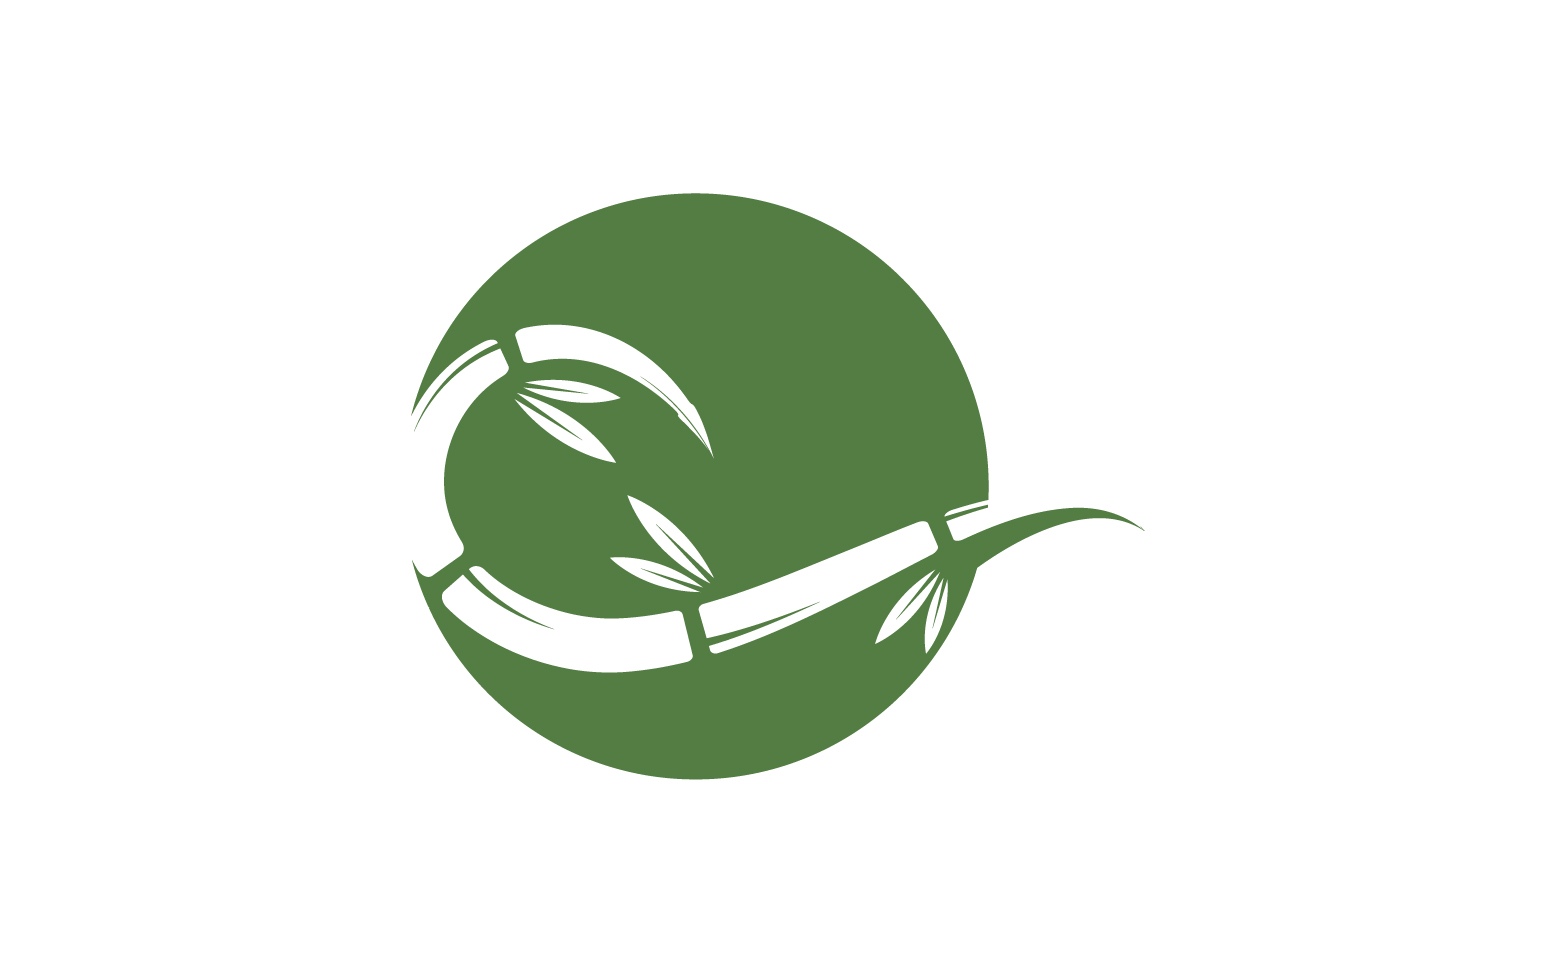 Bamboo tree logo vector v.28